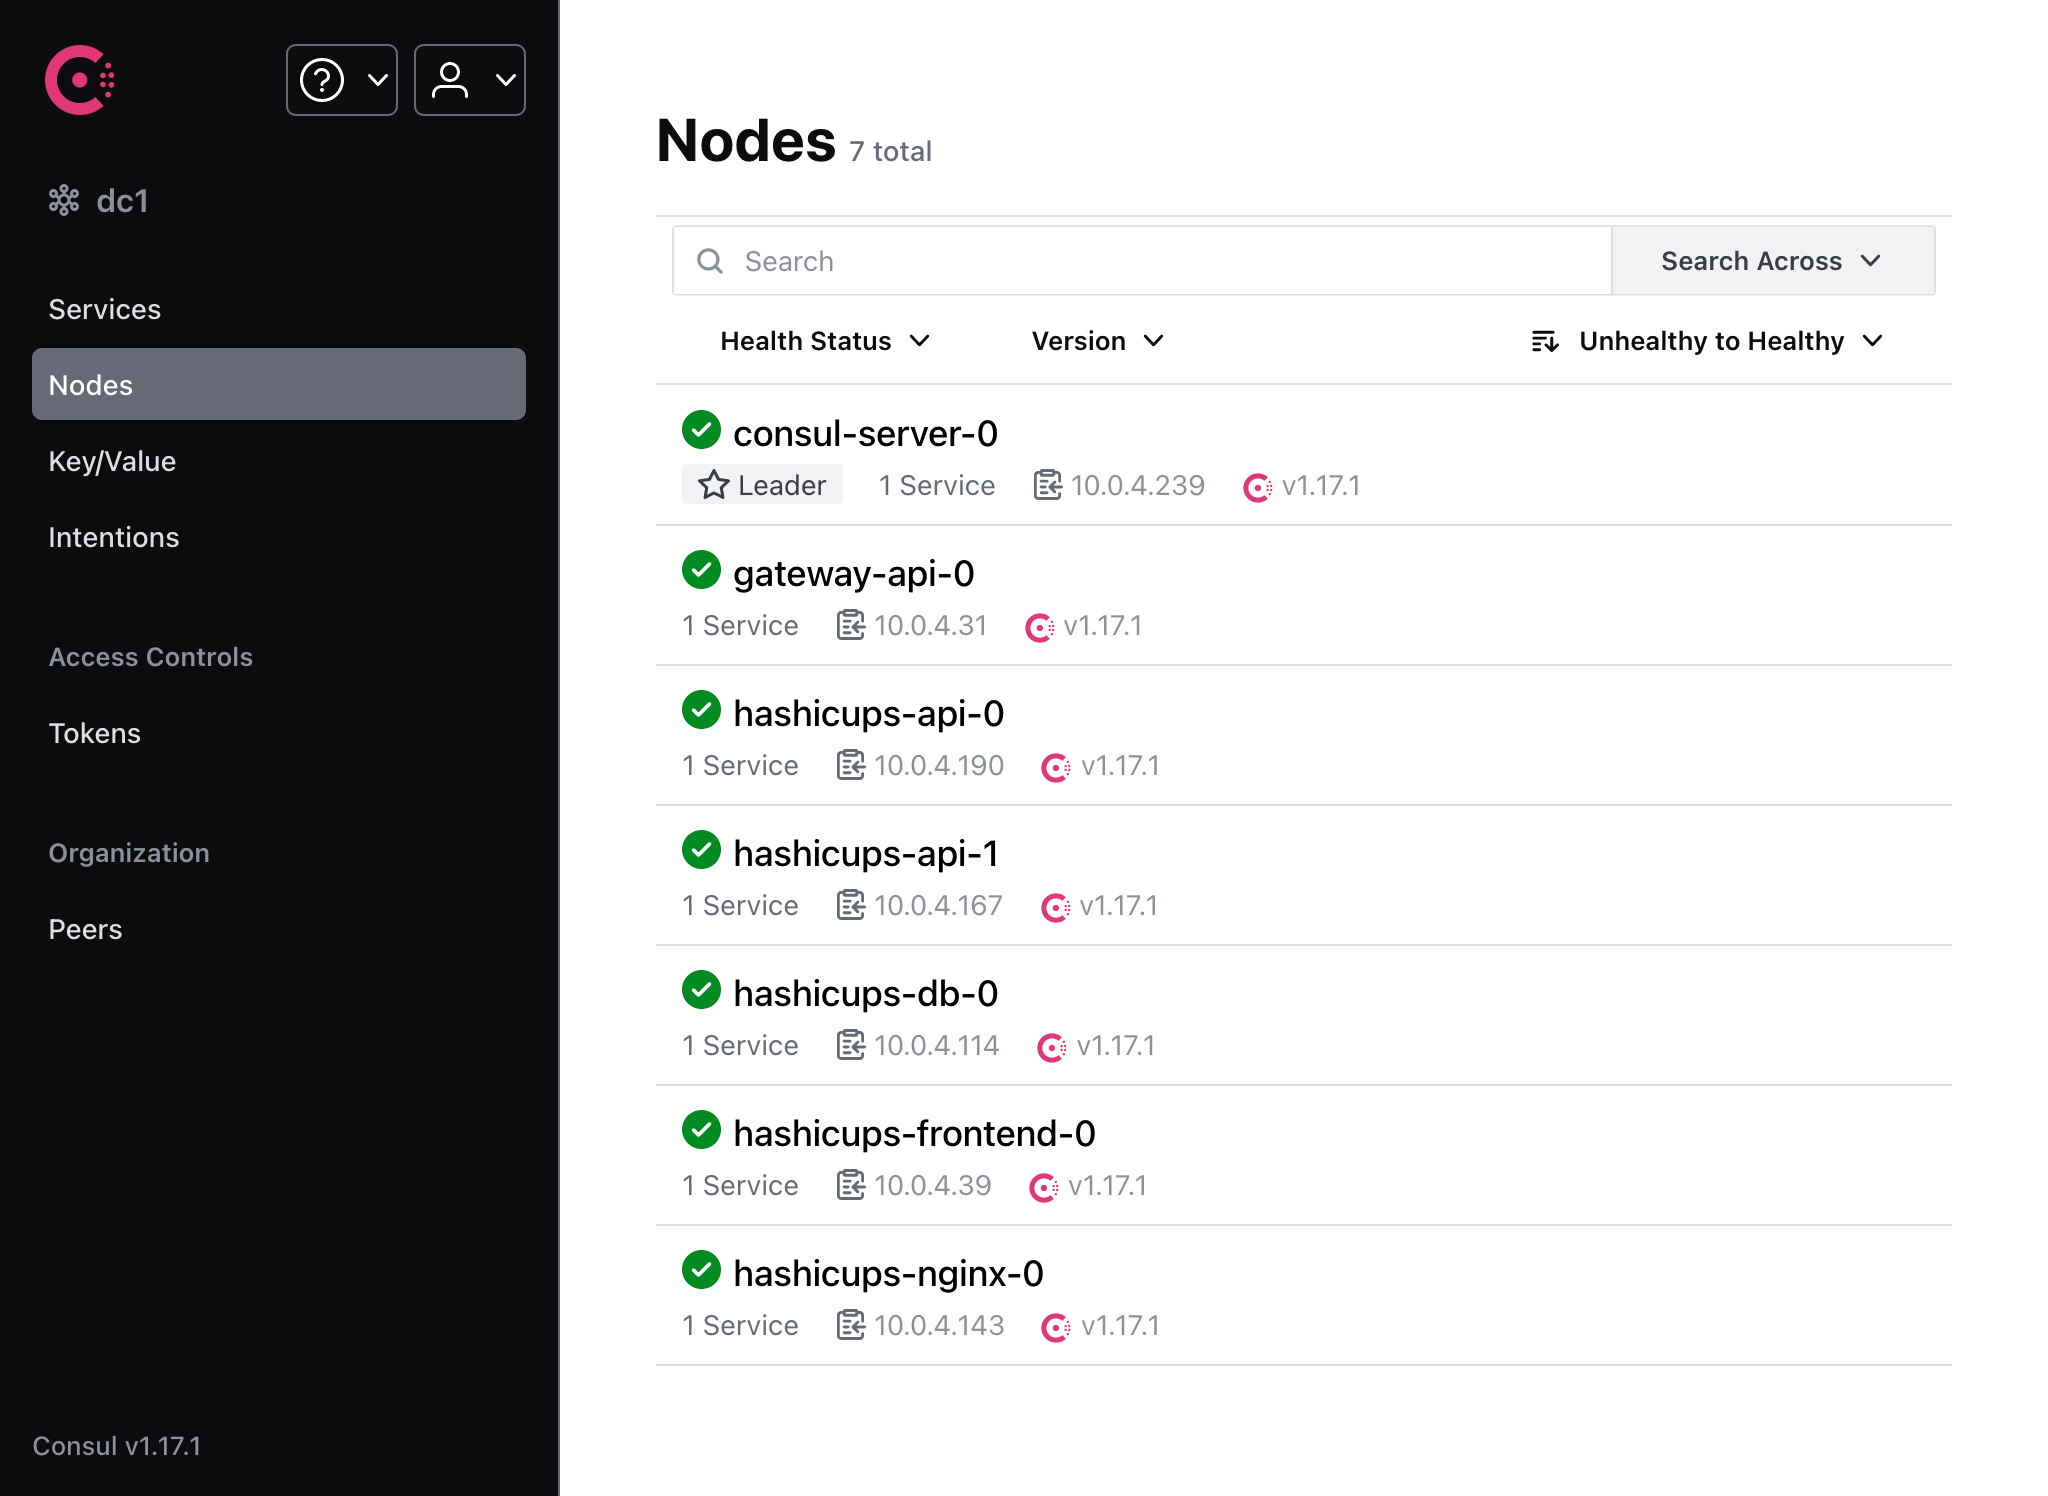 Nodes page - Multiple API instances